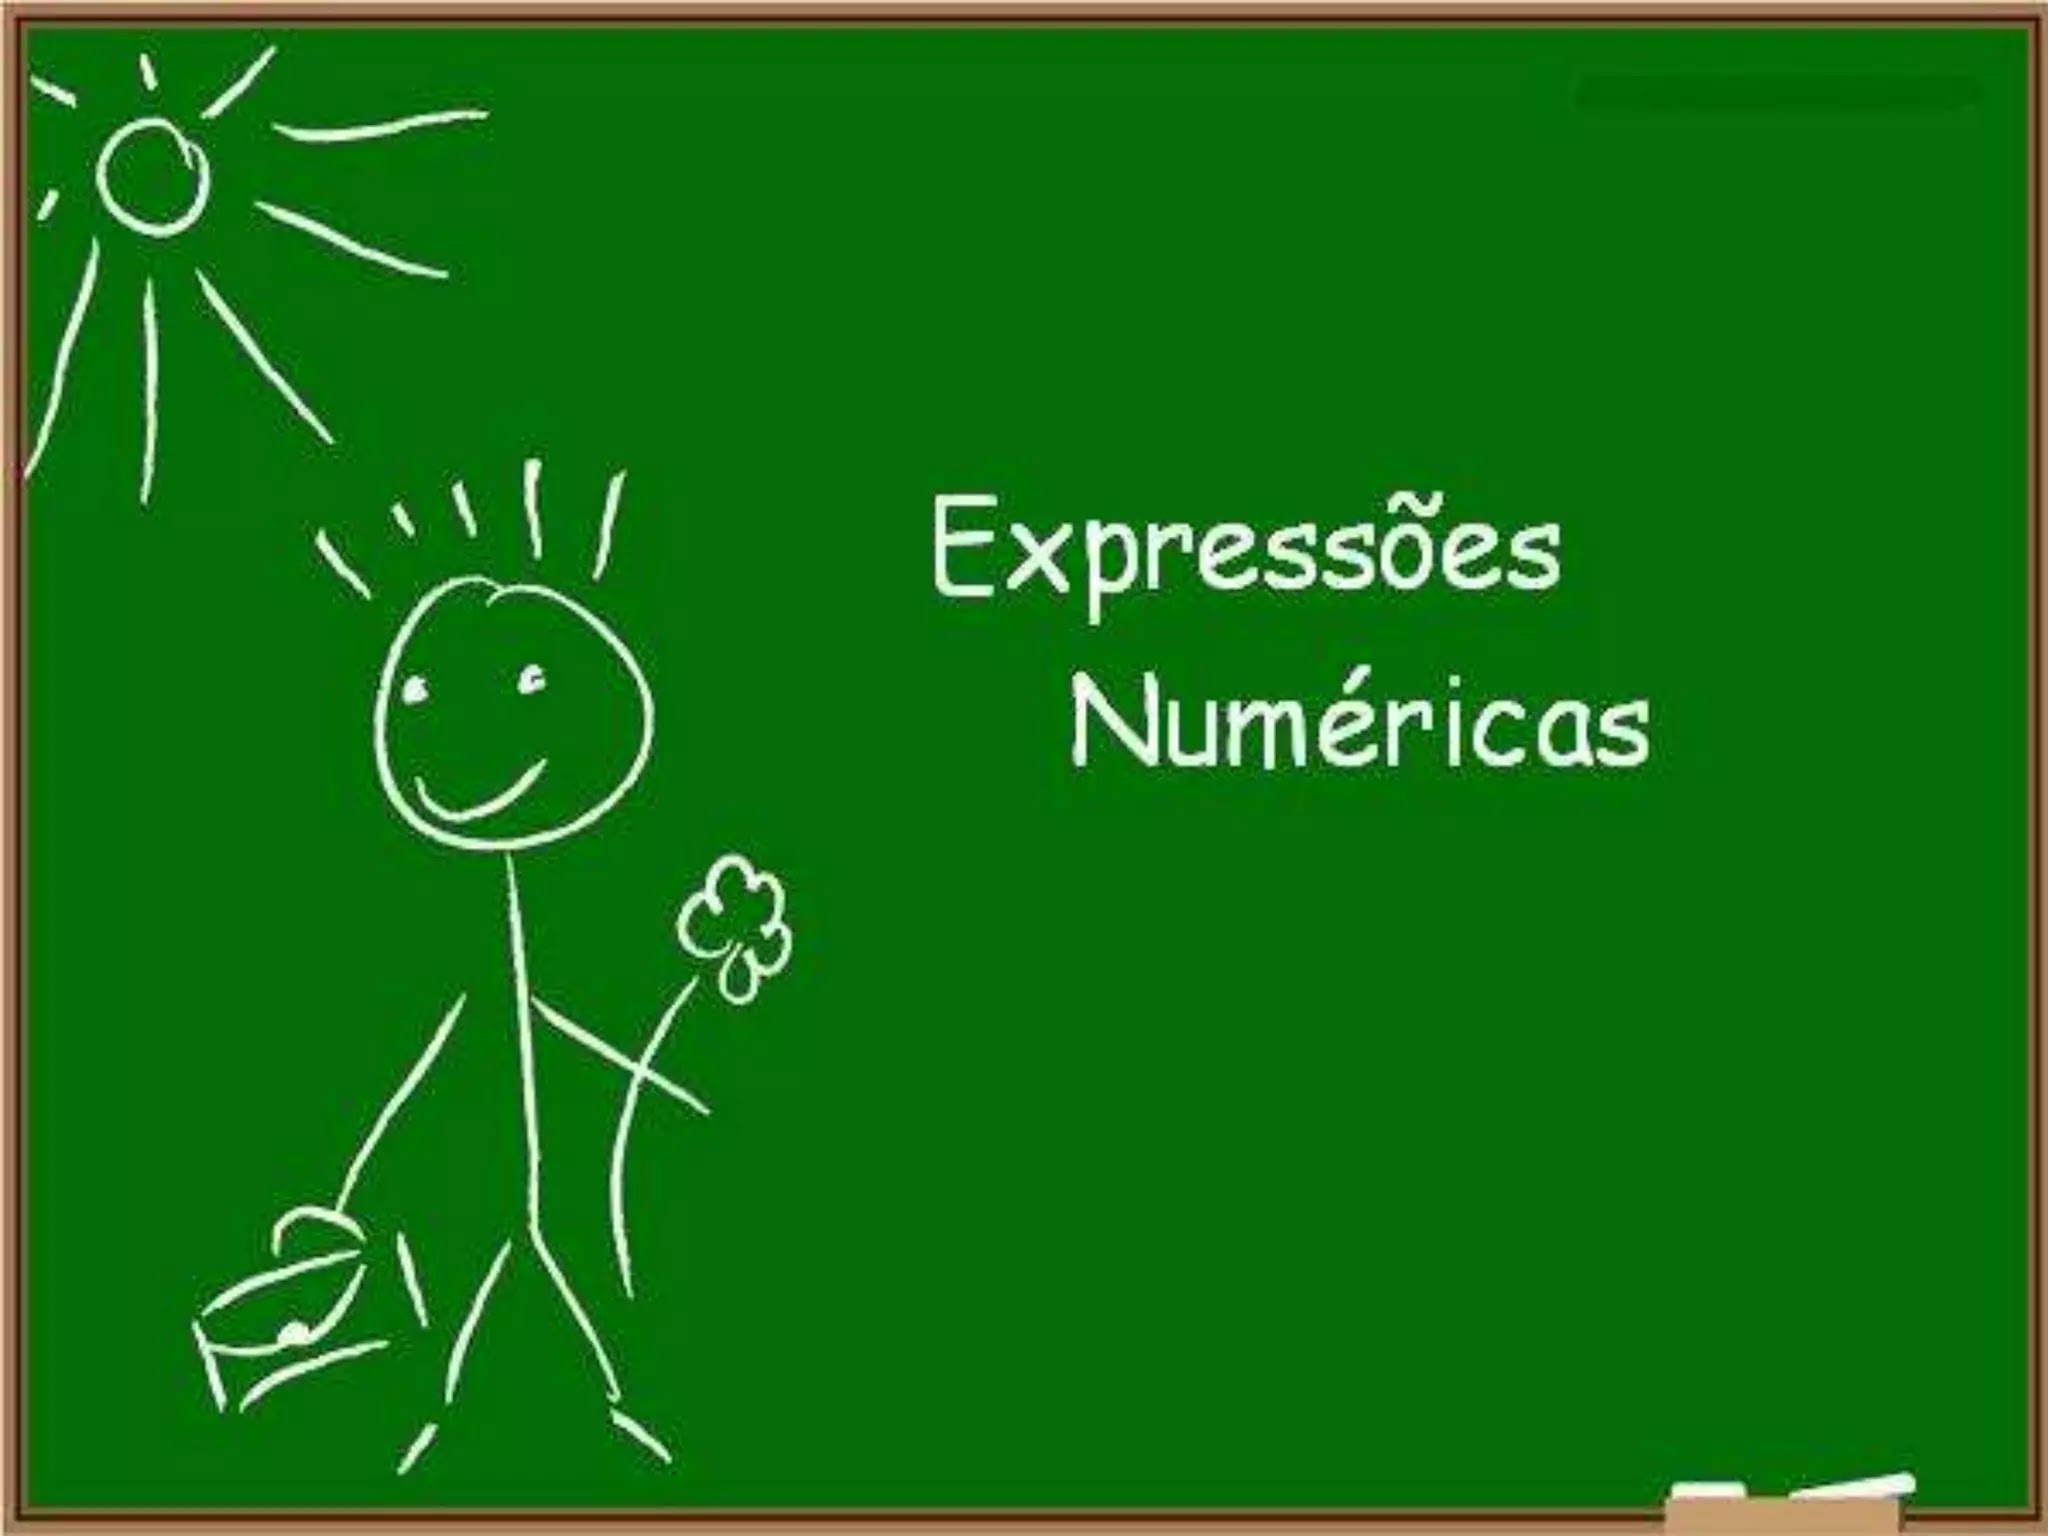 Expressões numéricas